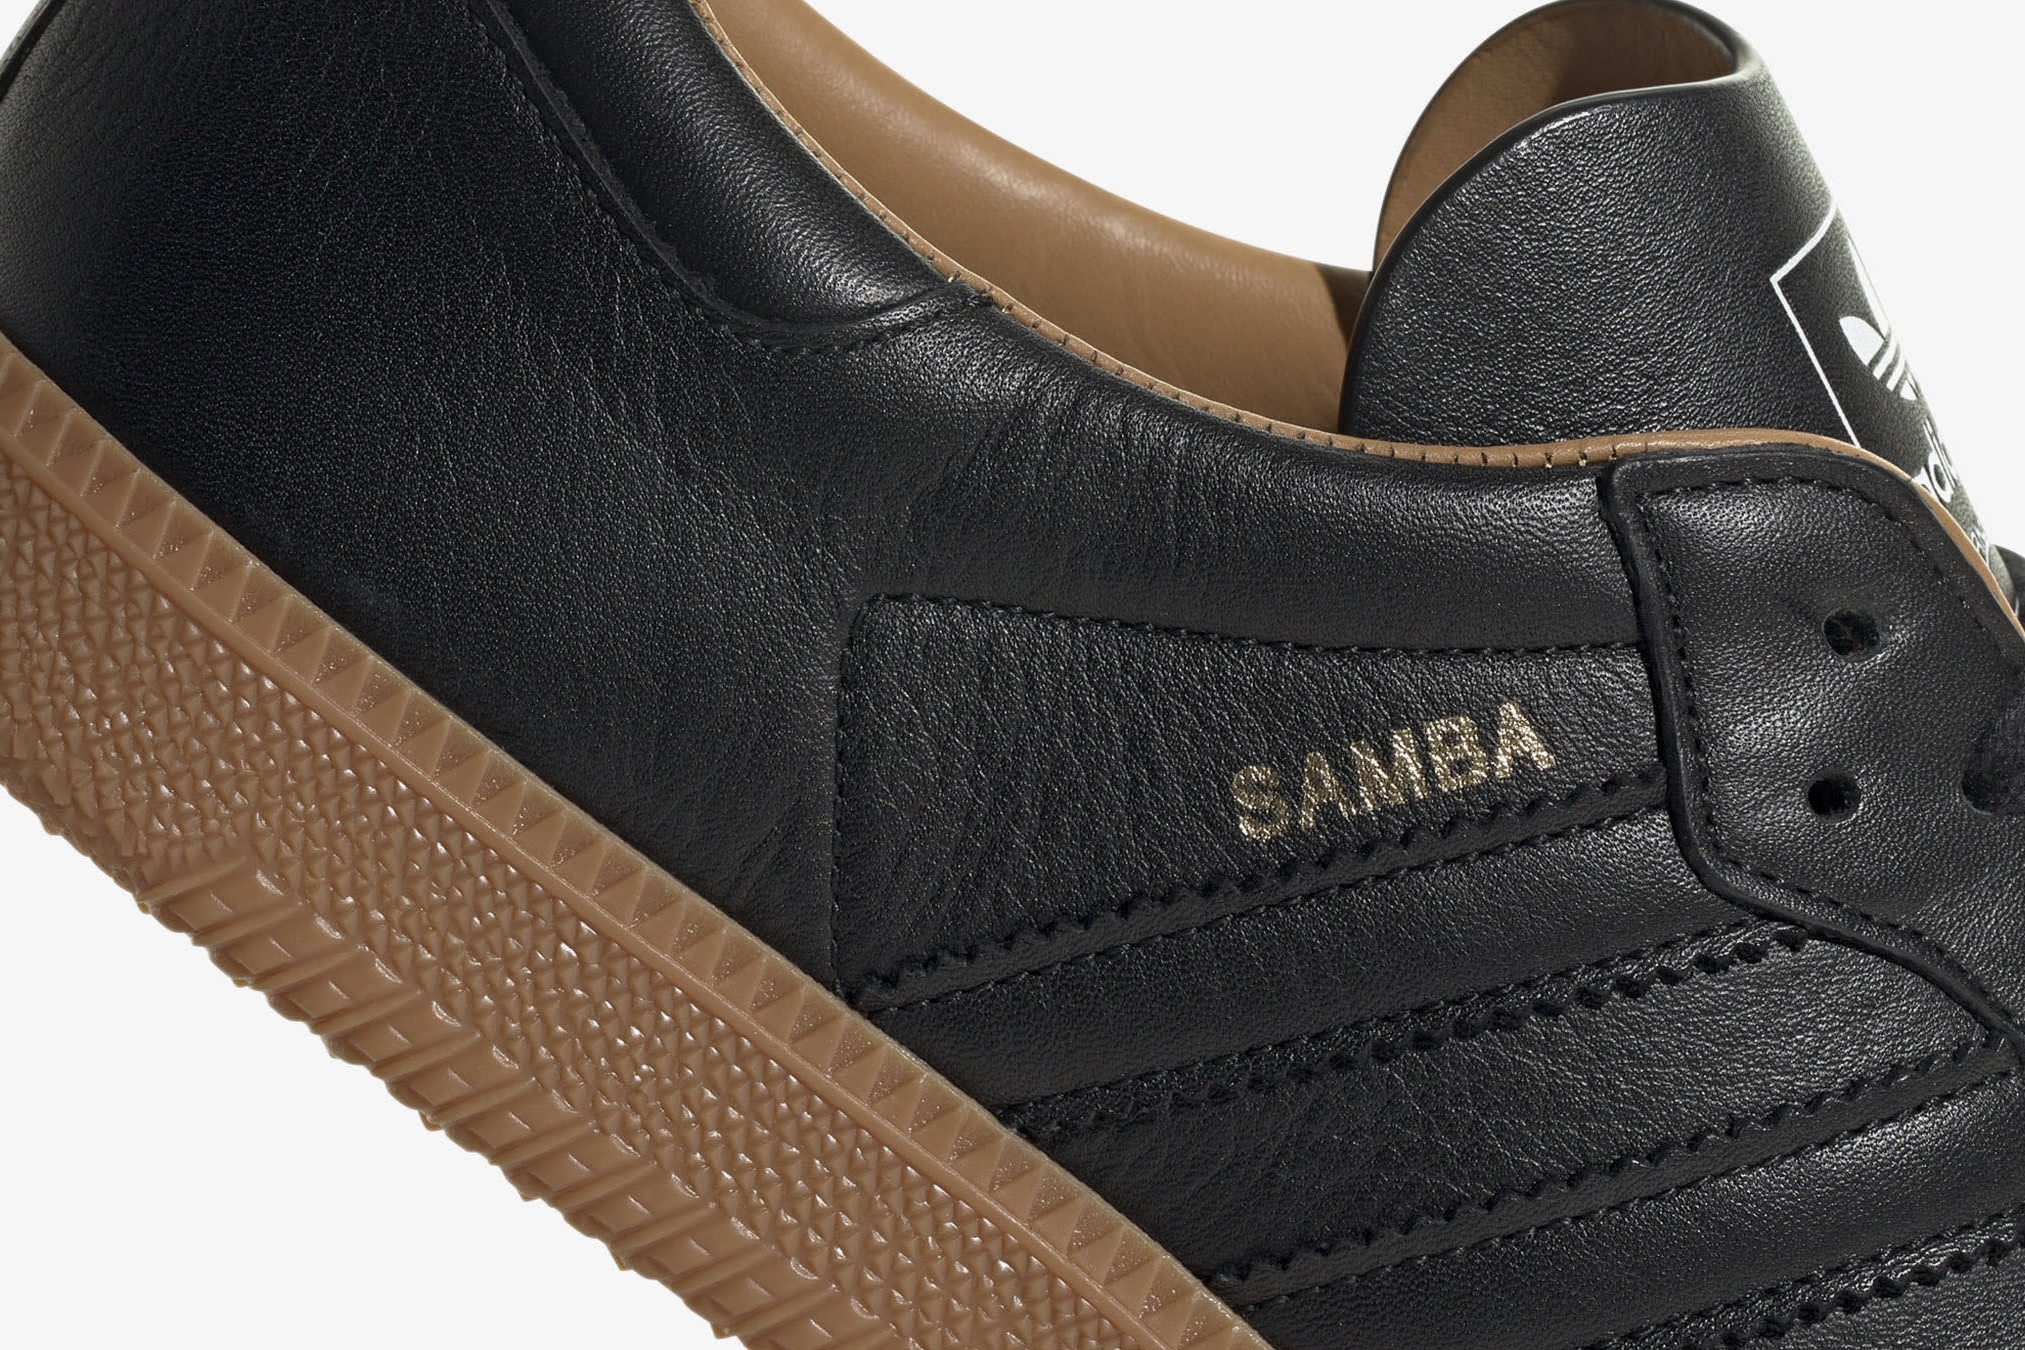 adidas samba made in italy